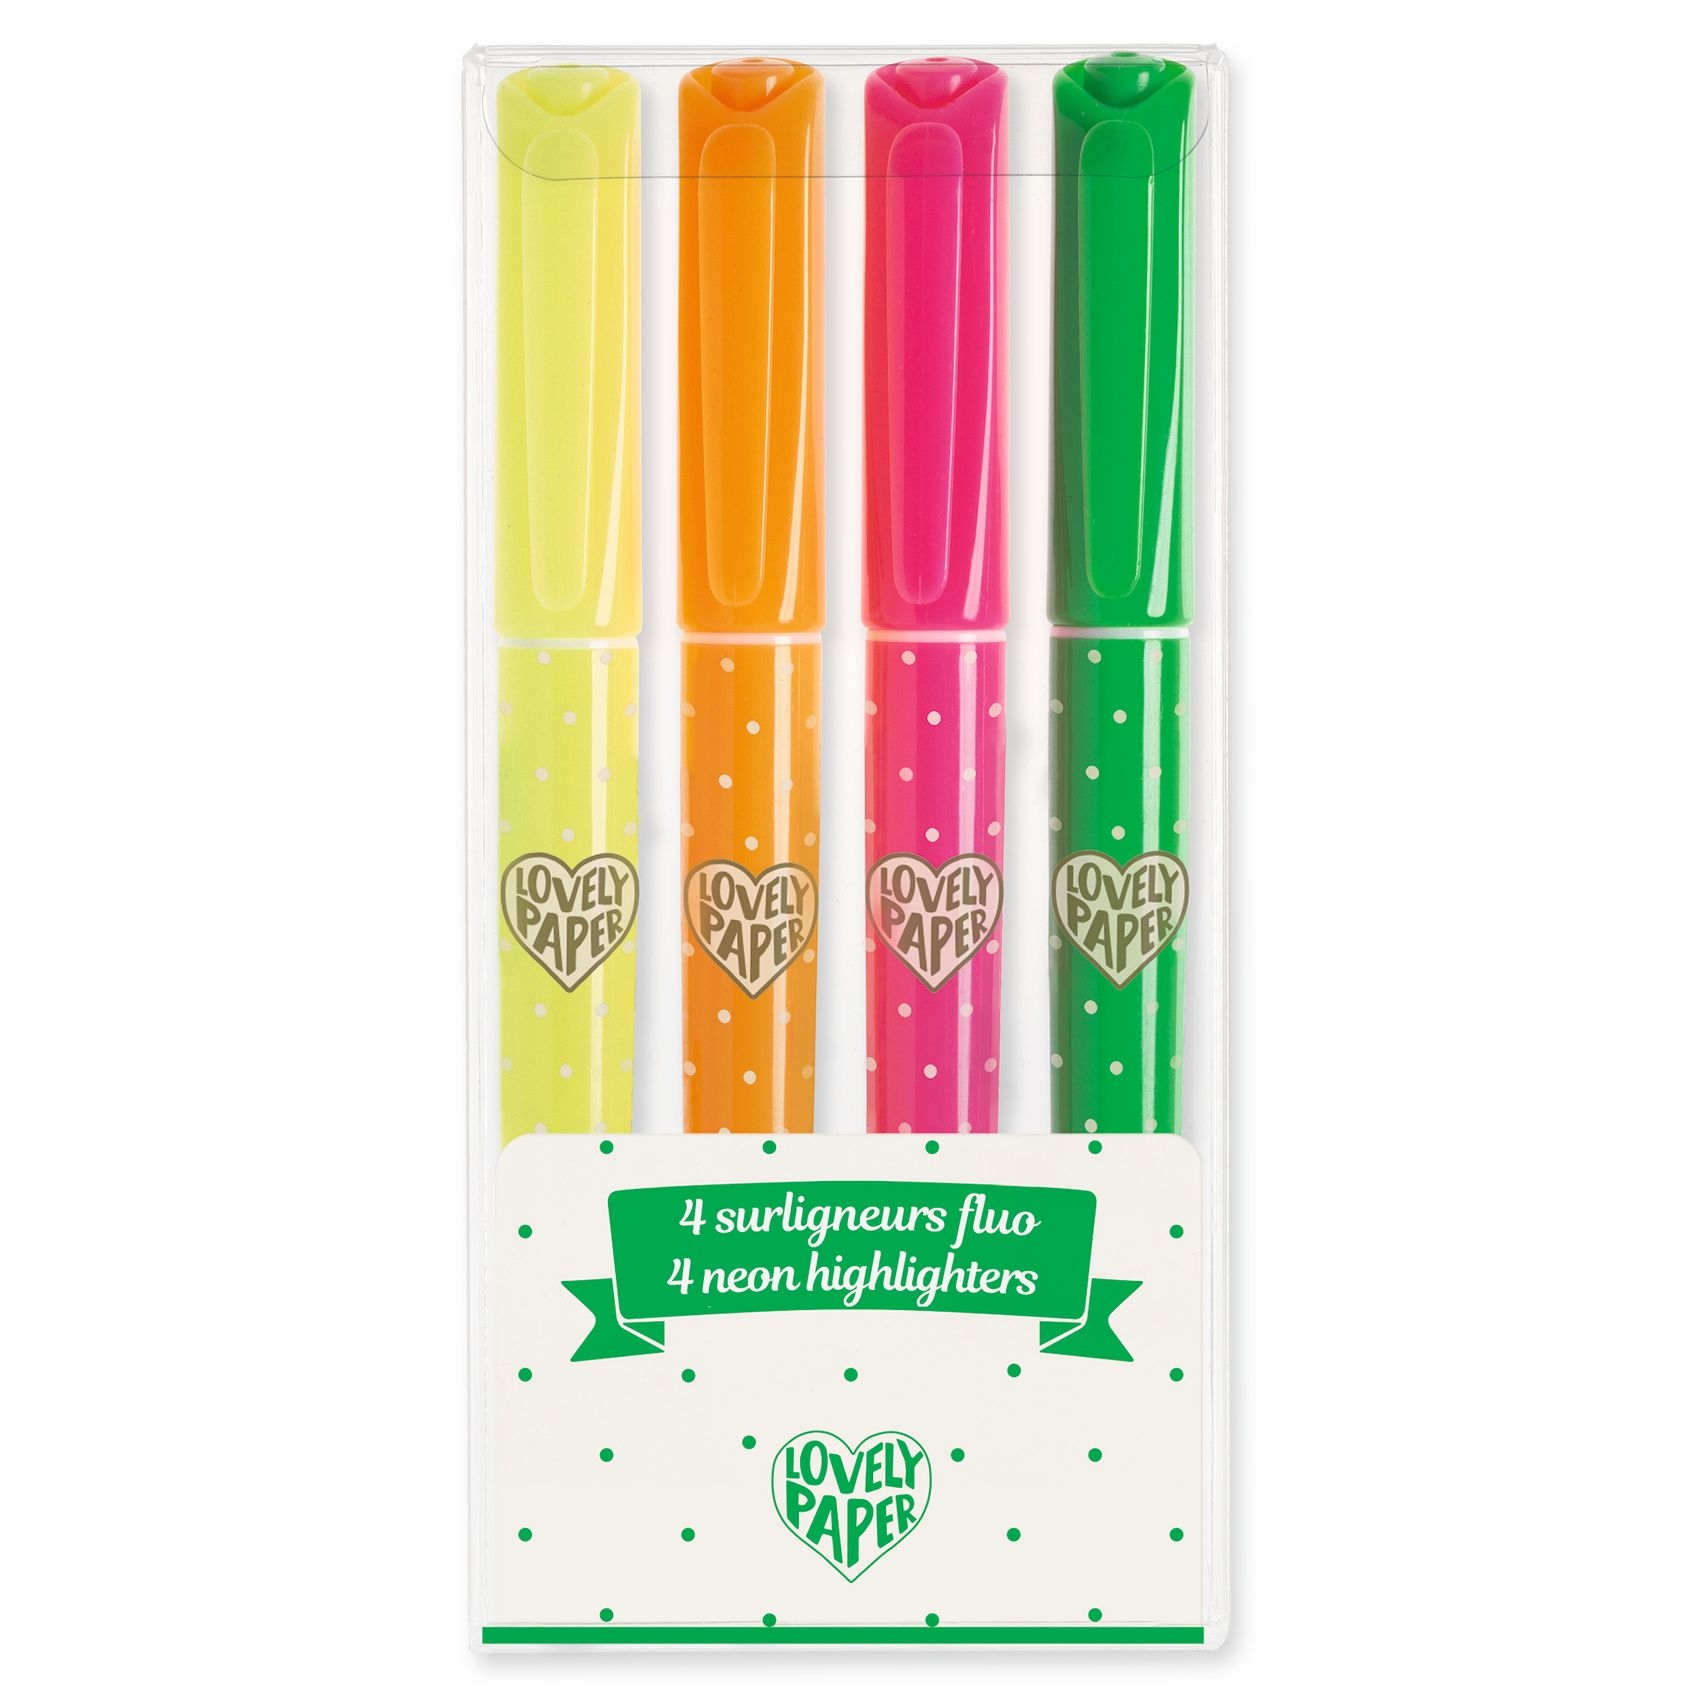 Szövegkiemelő toll készlet 4 neon színben - 4 neon highlighters - 0